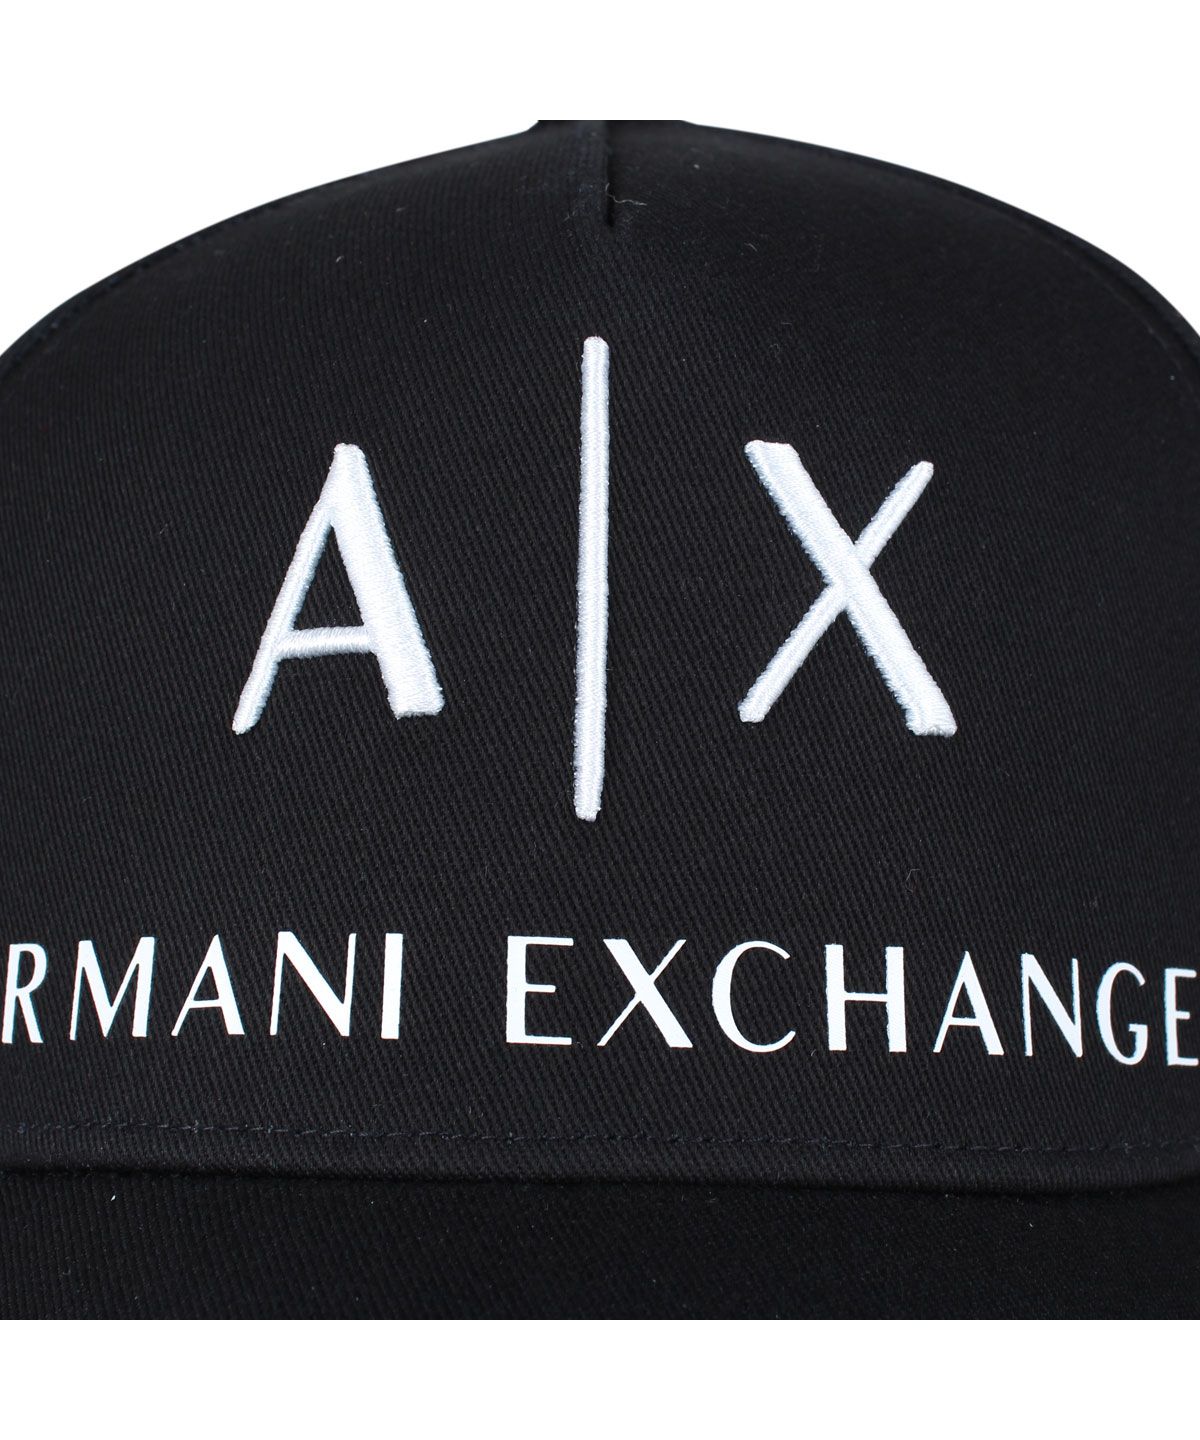 アルマーニエクスチェンジ ARMANI EXCHANGE キャップ 帽子 ベース